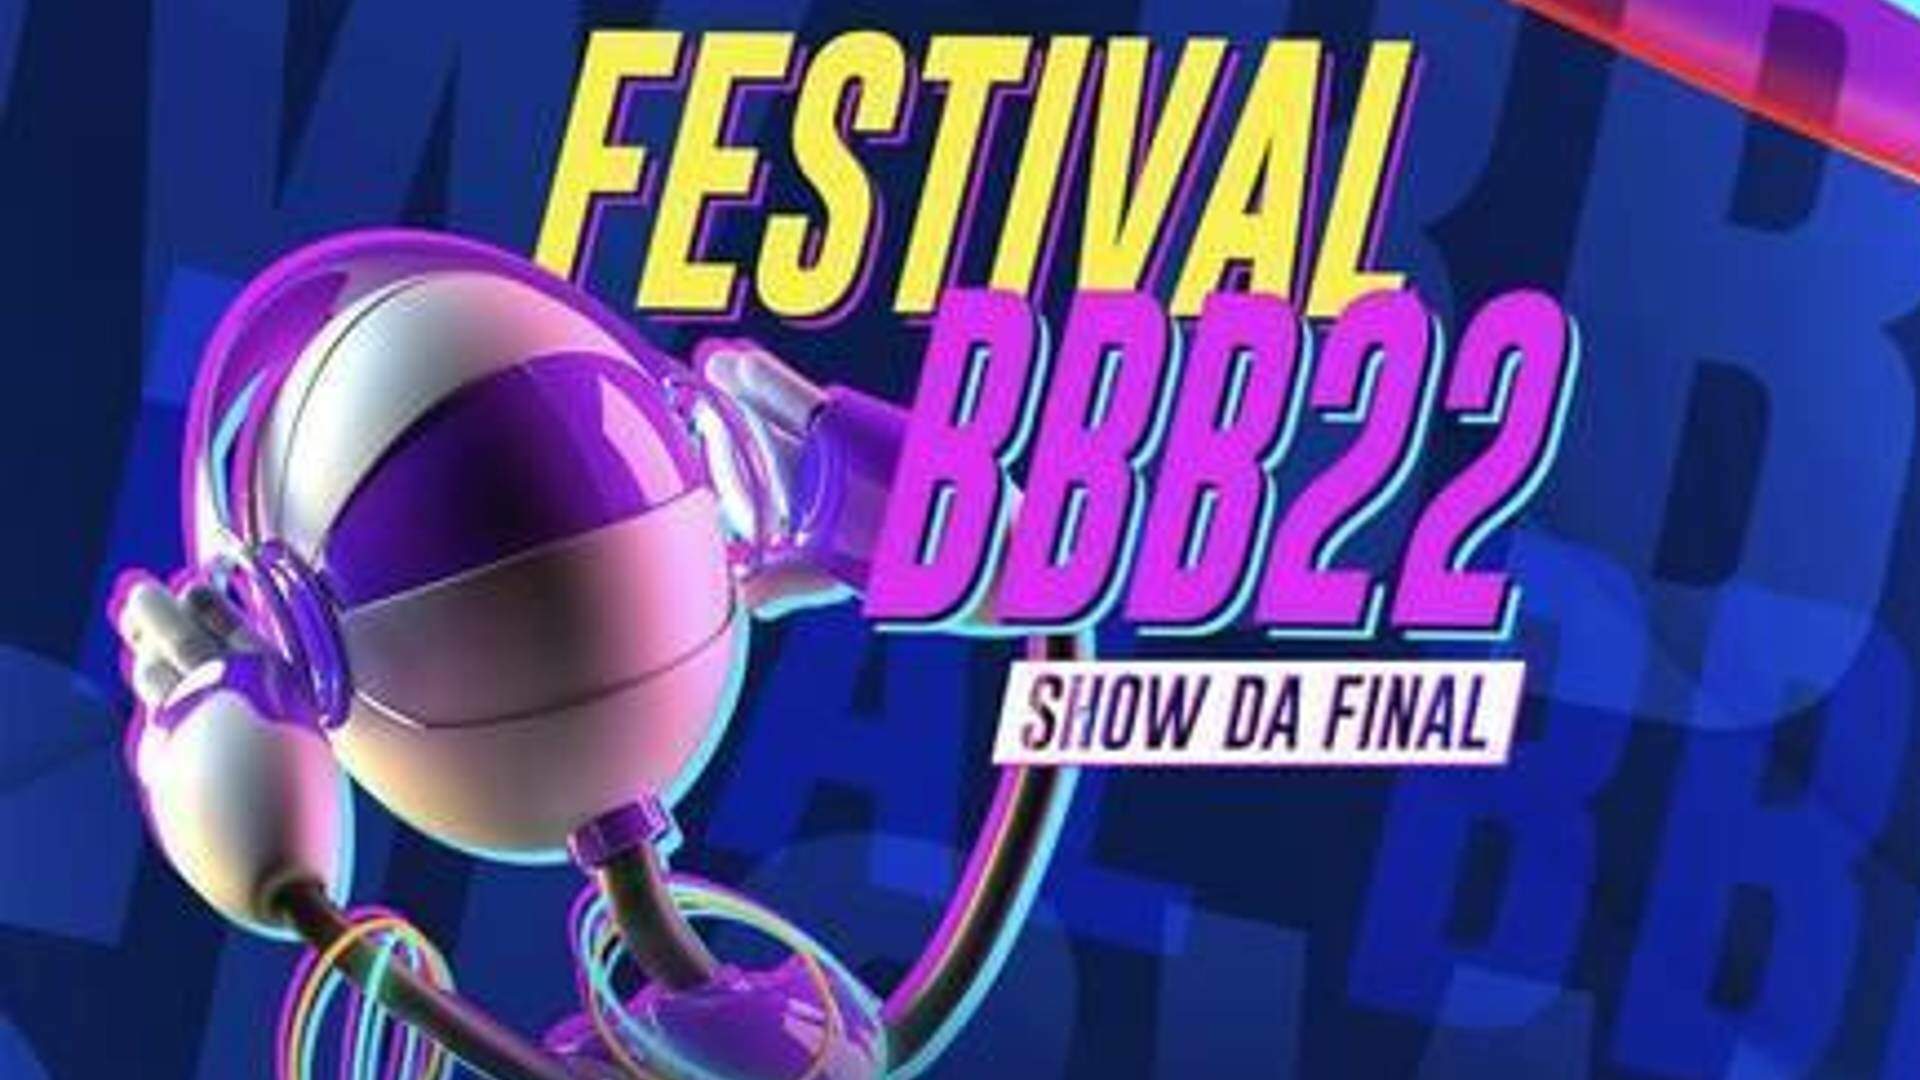 Como será a final do BBB 22? Festival musical é confirmado com shows de oito artistas - Metropolitana FM